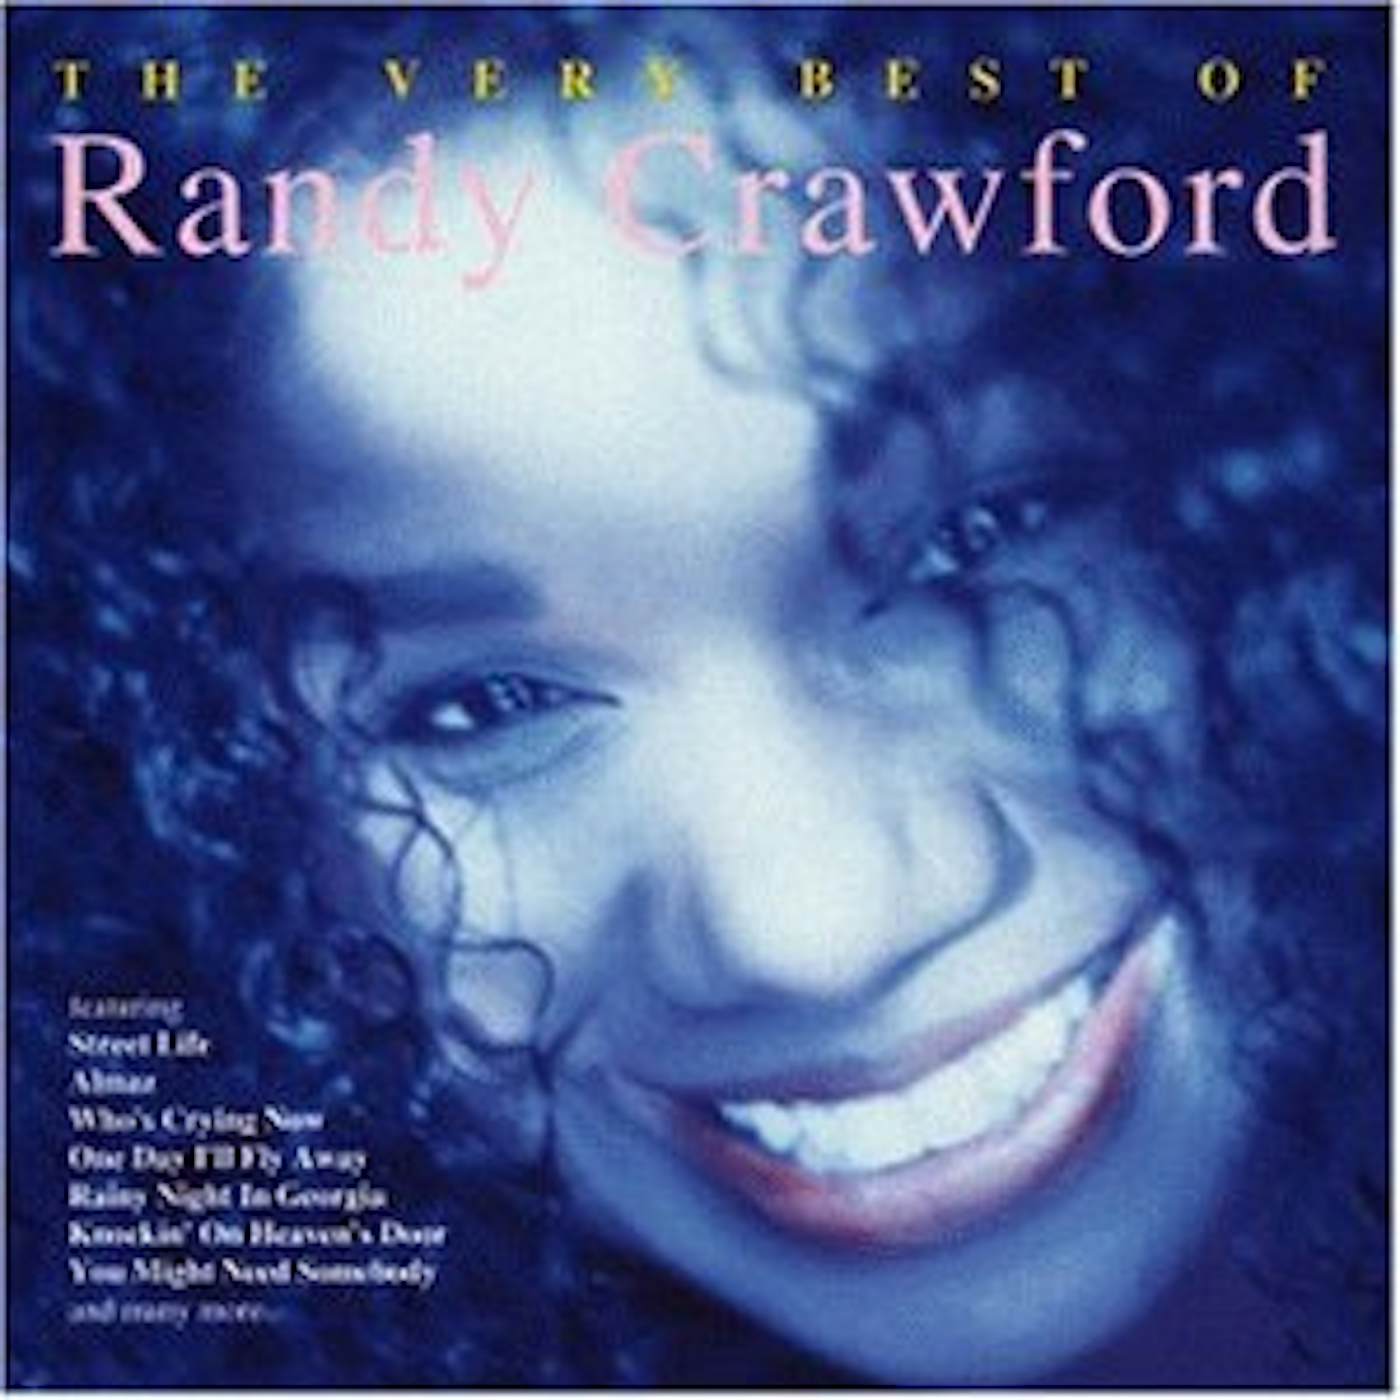 Randy Crawford VERY BEST OF CD